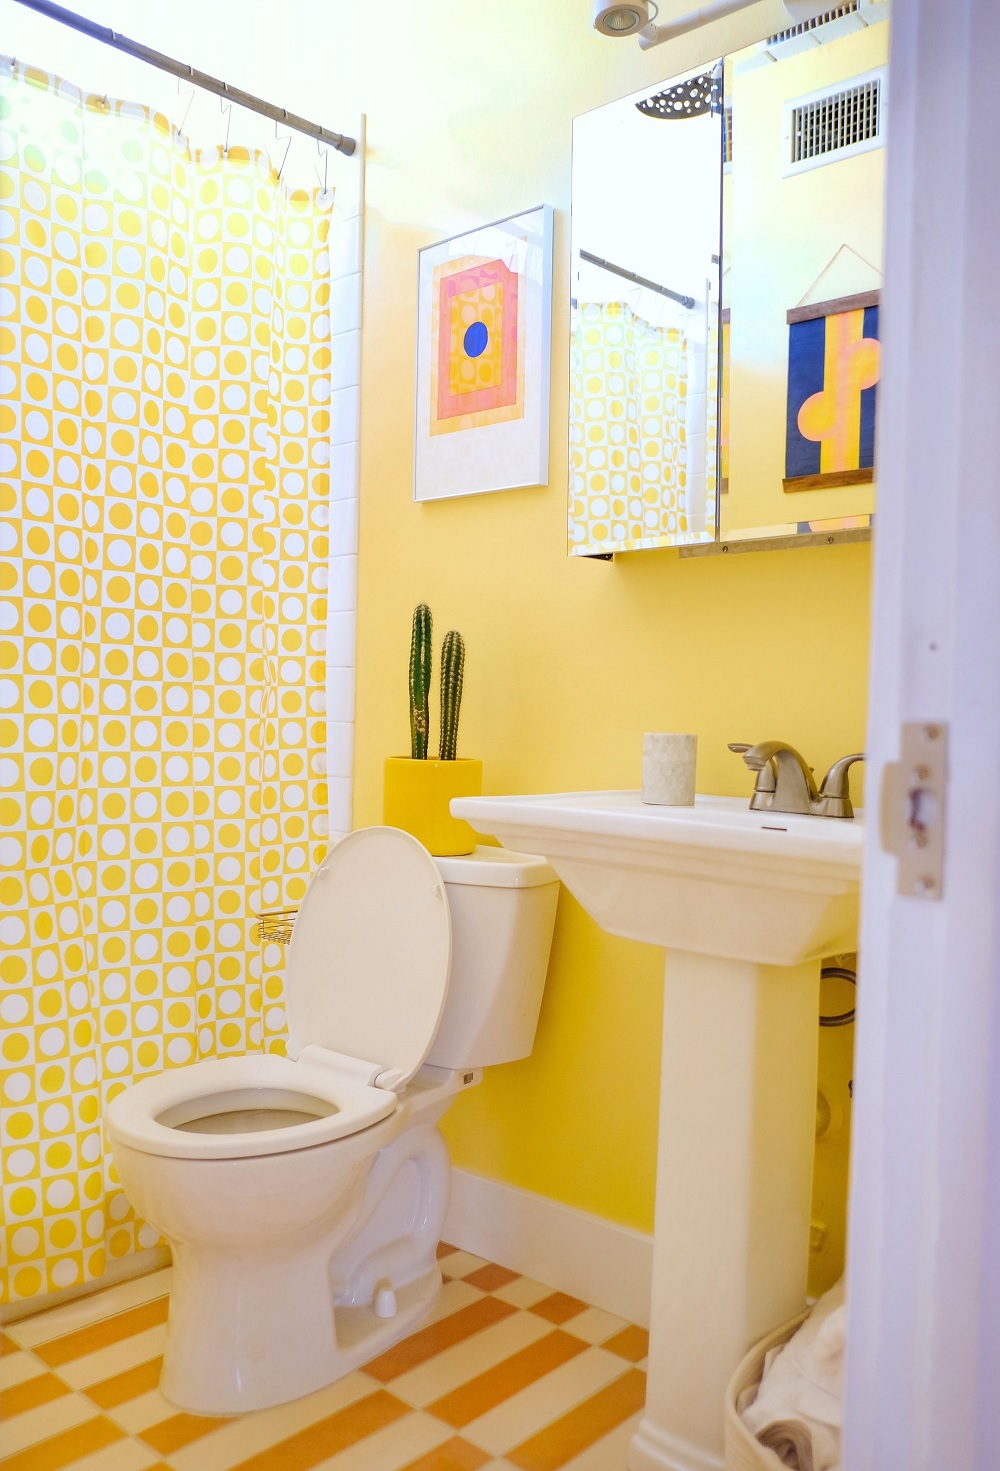 Phòng tắm thiết kế theo phong cách Mid-century với tone màu vàng tươi sáng, kết hợp họa tiết hình học sống động ở cả rèm che và sàn nhà mang đến vẻ bắt mắt ngay từ cái nhìn đầu tiên.